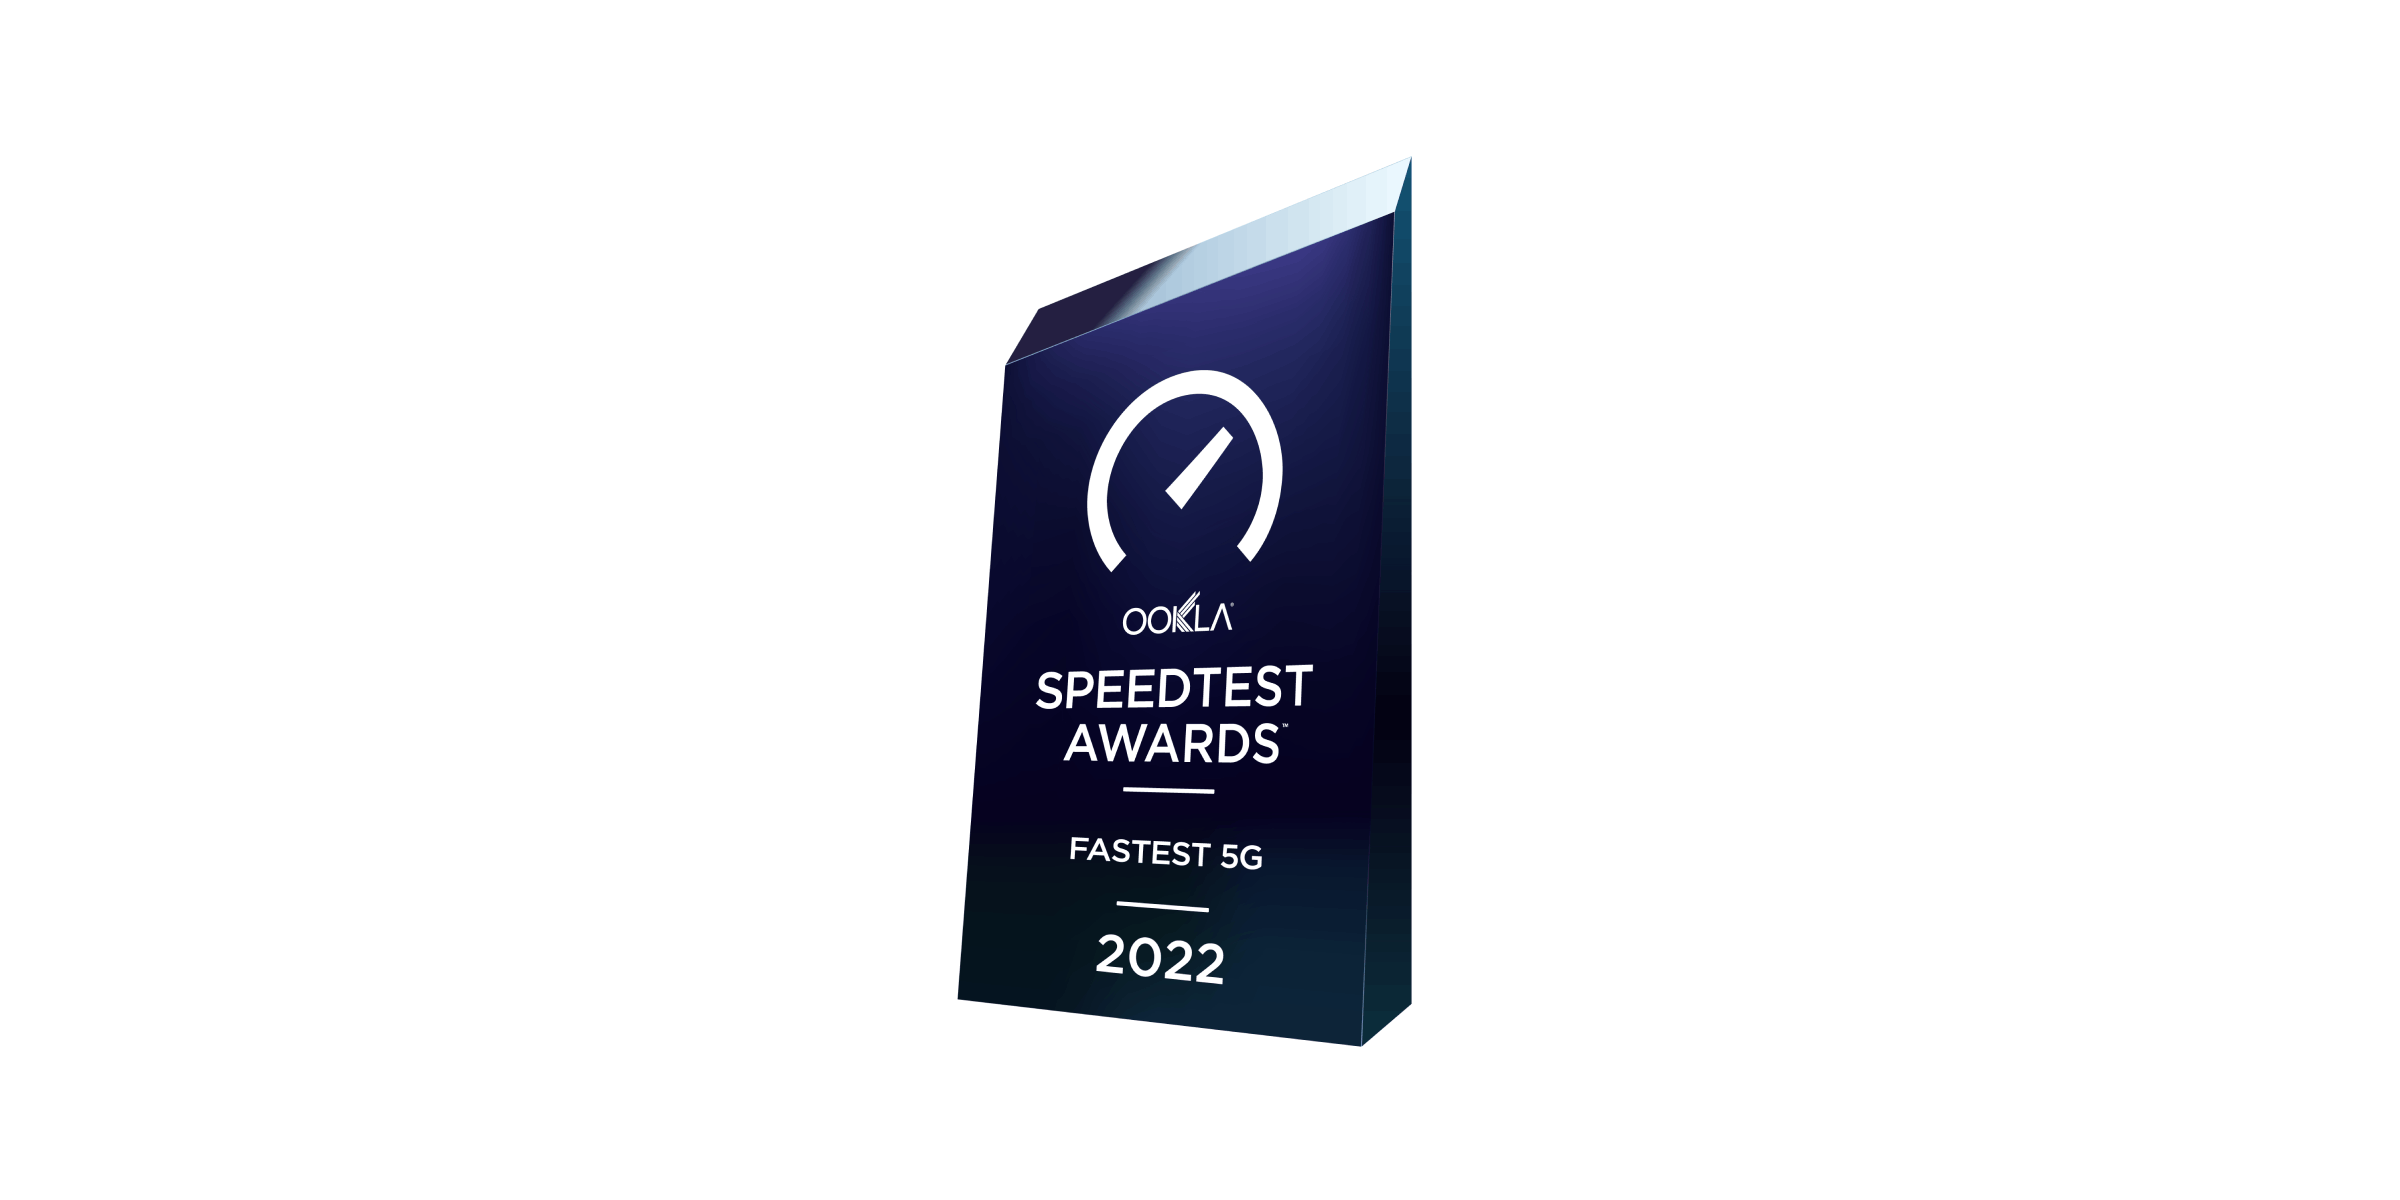 Speedtest awards fastest 5G 2022